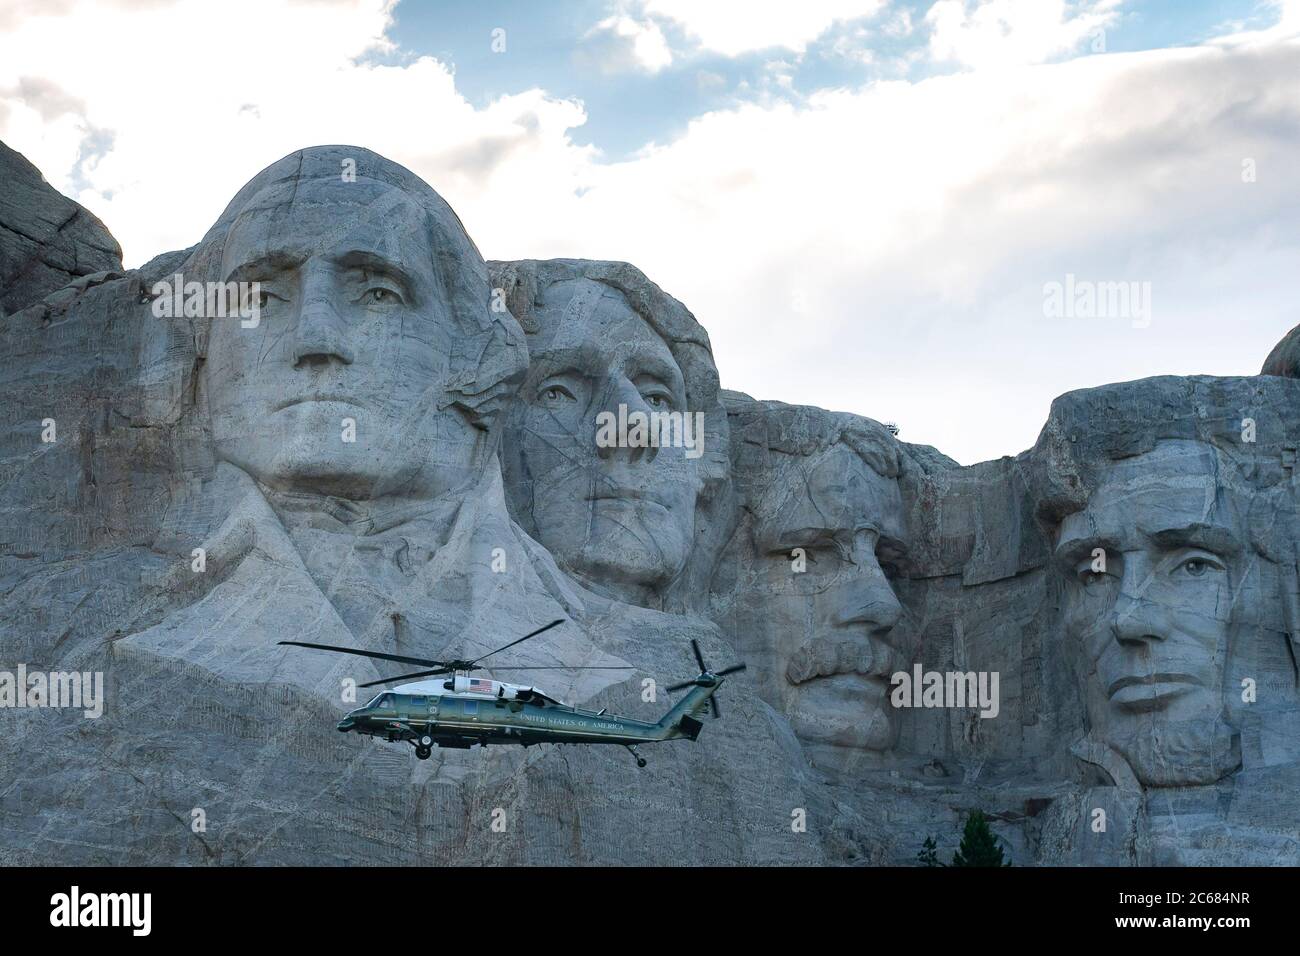 Il presidente degli Stati Uniti Donald Trump e la First Lady Melania Trump volano davanti alle colossali sculture degli ex presidenti di Marine One, durante la celebrazione del giorno dell'Indipendenza dal saluto all'America al Mount Rushmore National Memorial, 3 luglio 2020 a Keystone, South Dakota. Foto Stock